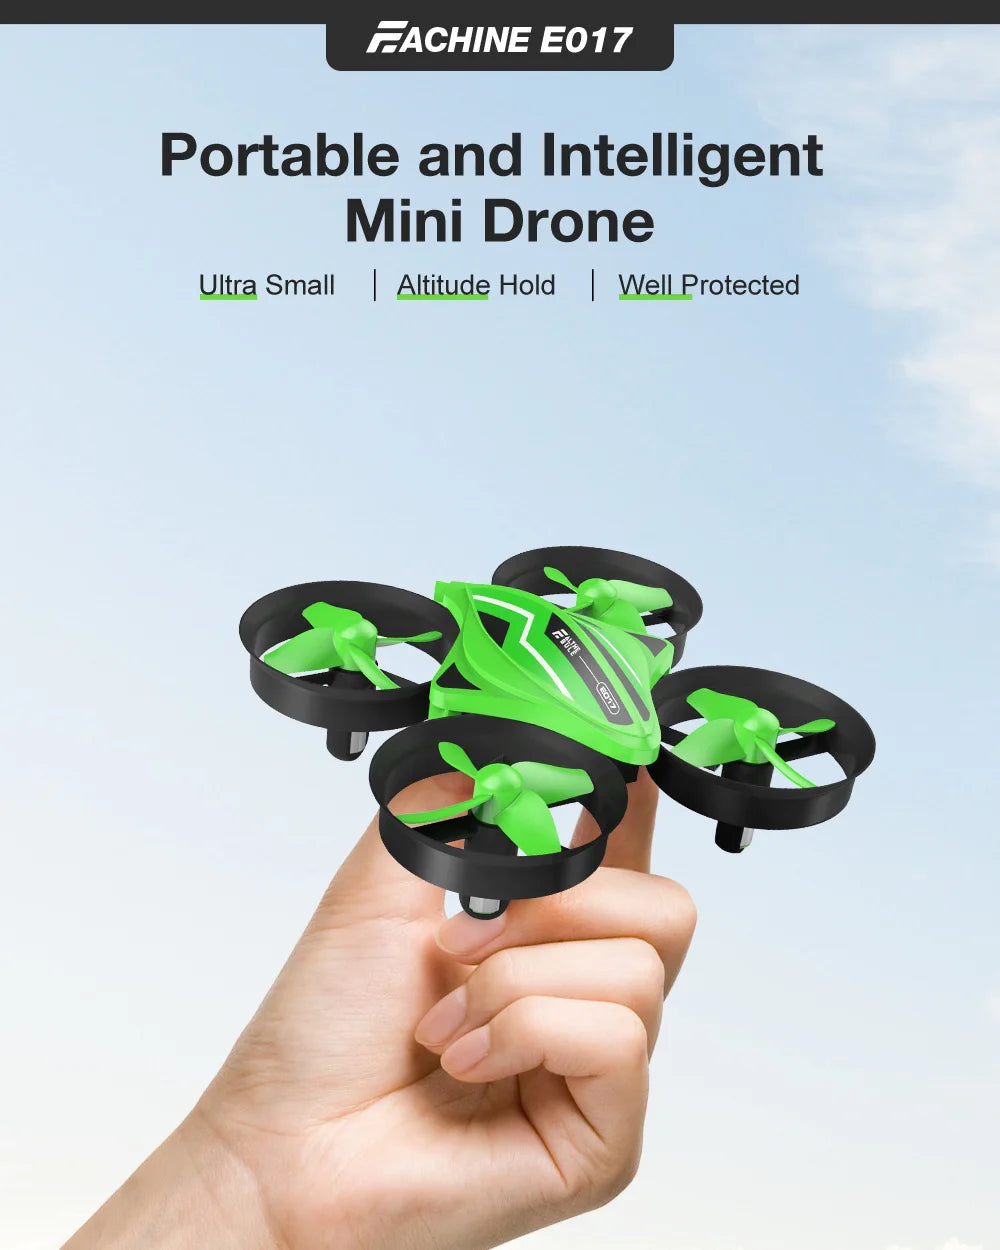 fachine e017 portable and intelligent mini drone ultra small